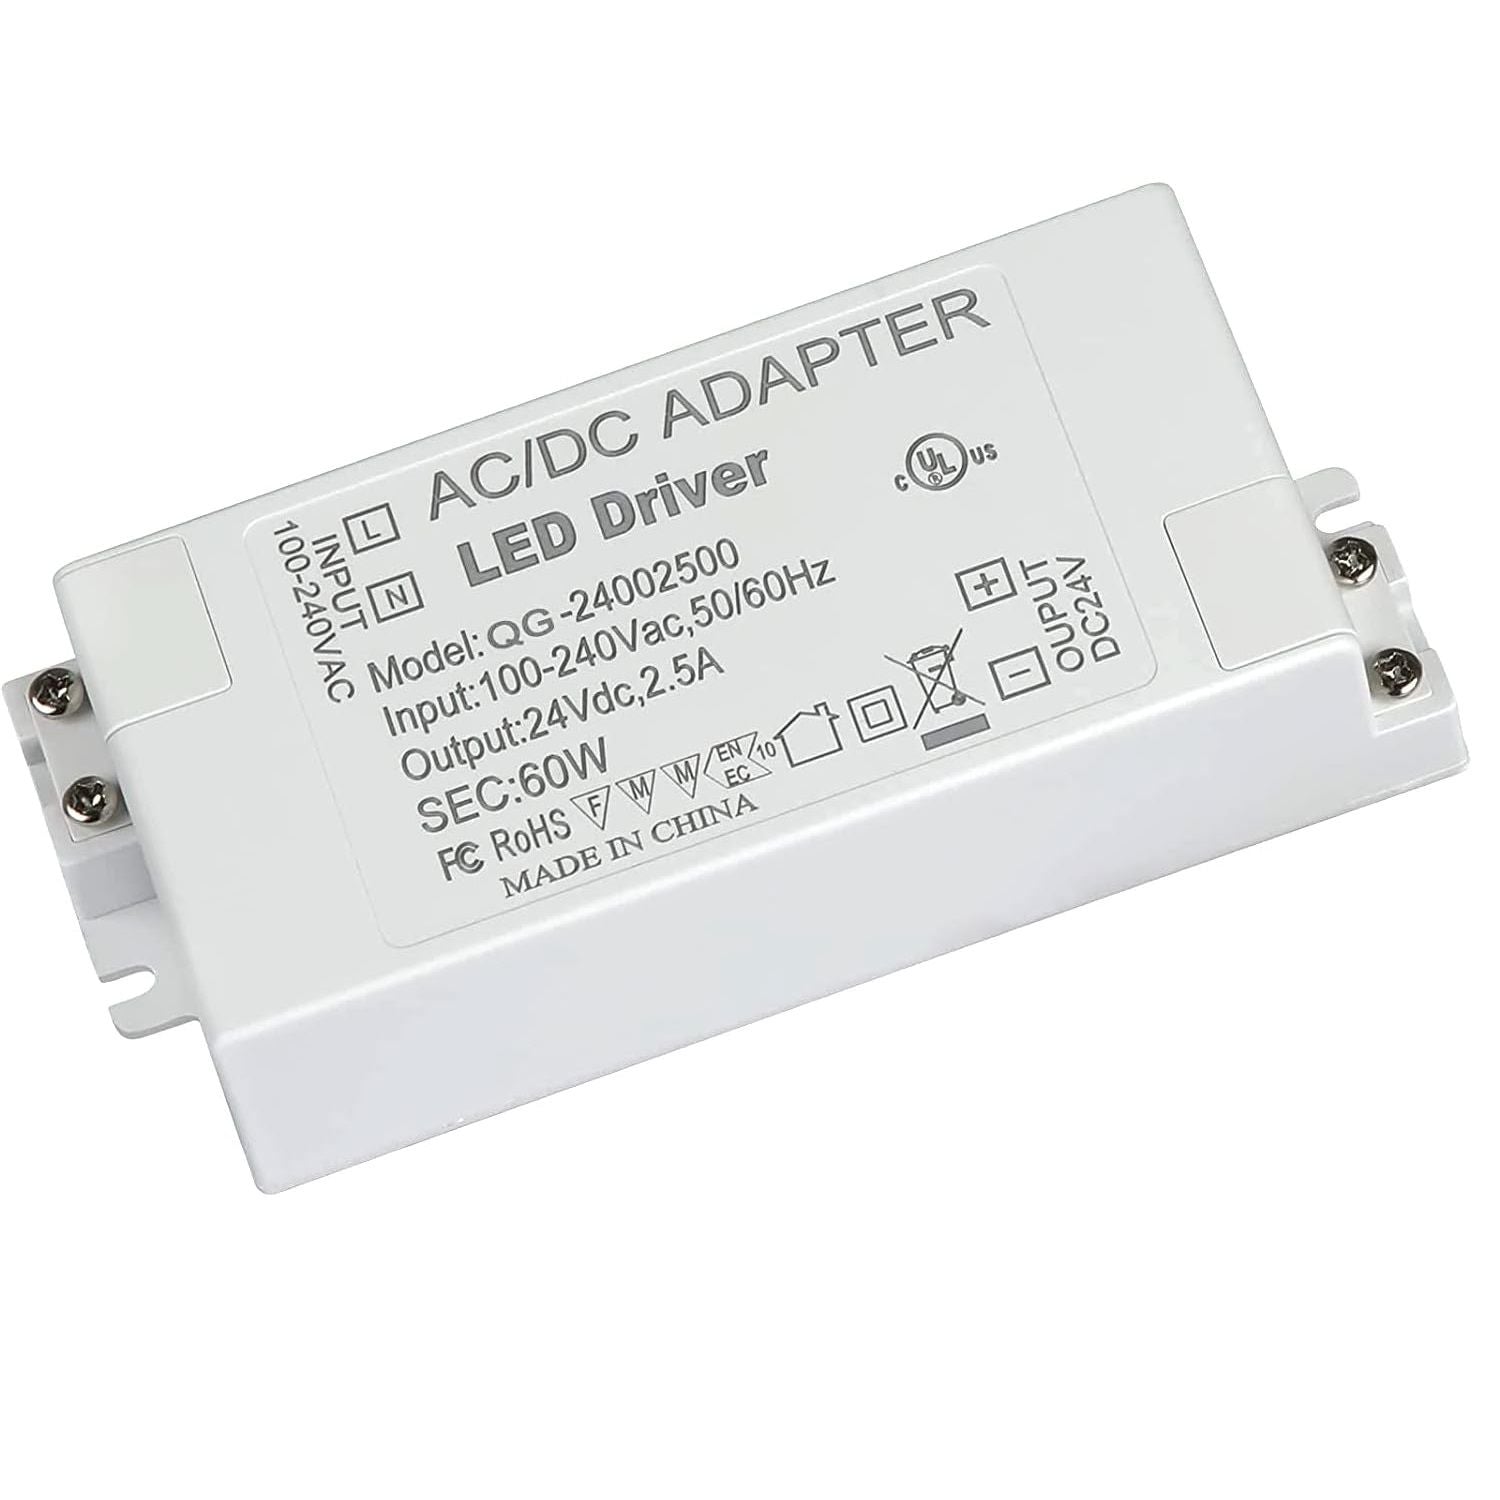 LED Driver 24V 60W (AC 100-240V to DC 24V 2.5A) Power Supply Adapter Converter, Low Voltage Transformer Output for LED Strip Lights Dephen